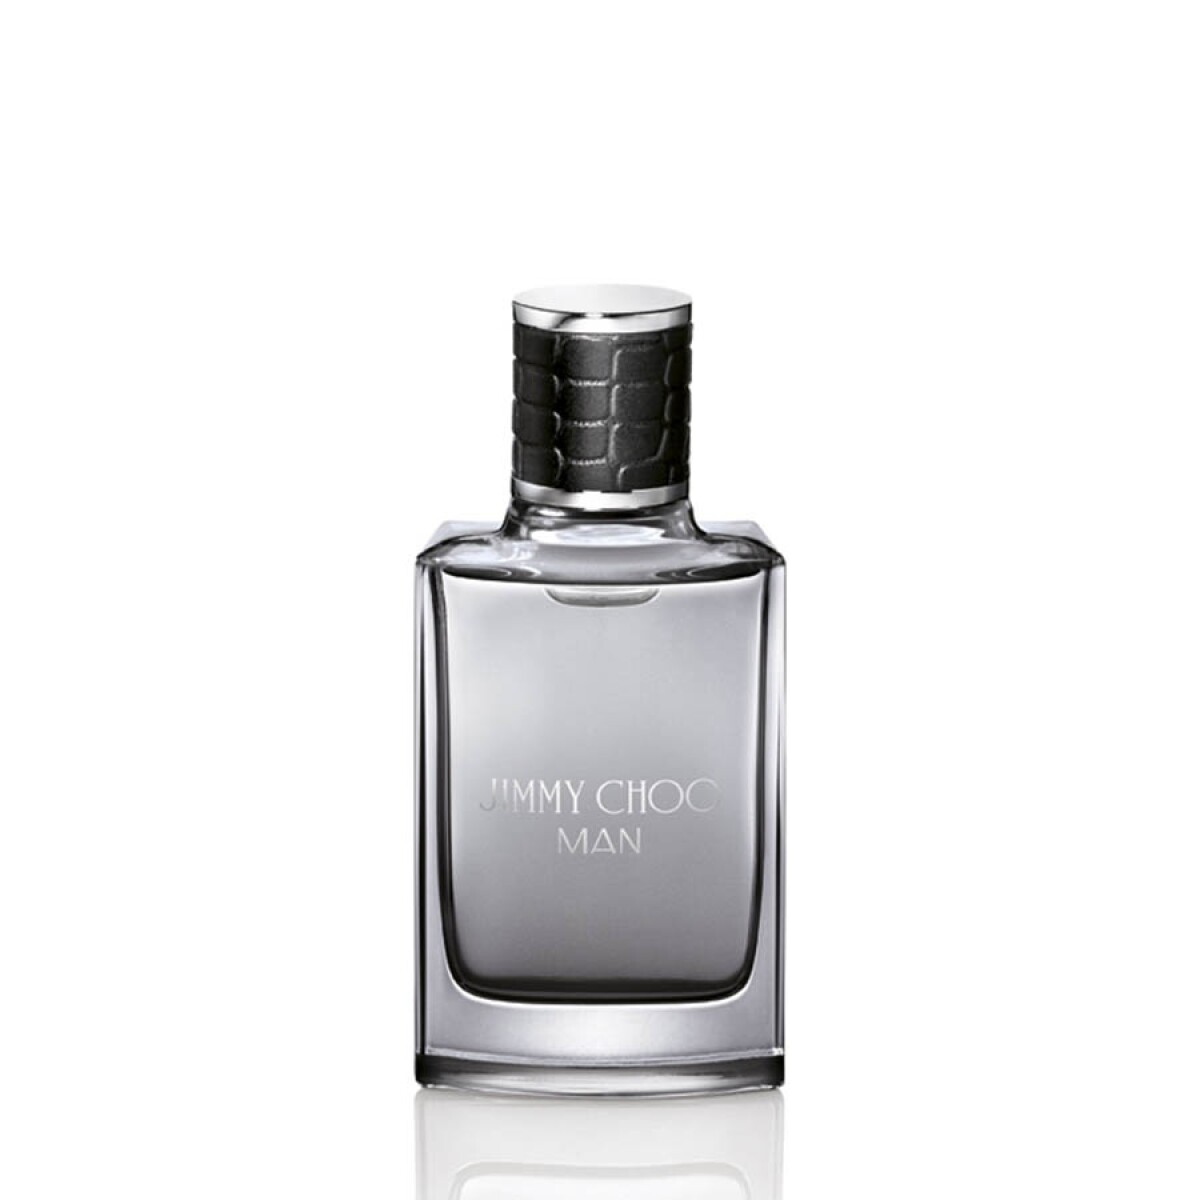 Perfume Jimmy Choo Man Edp 30 ml 